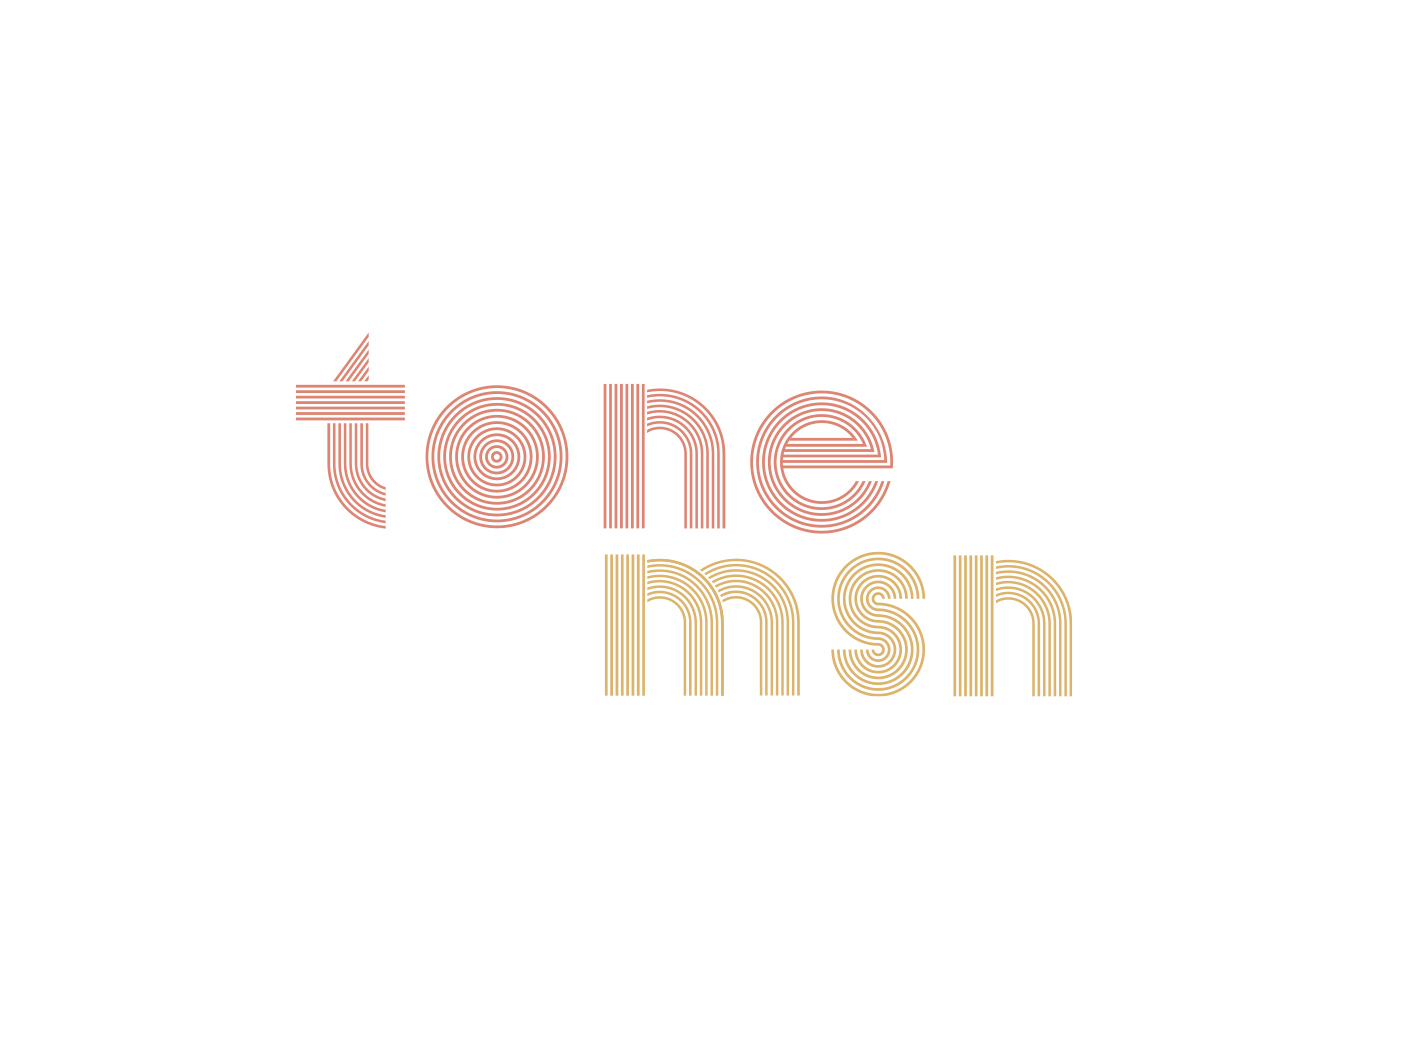 Tone Madison